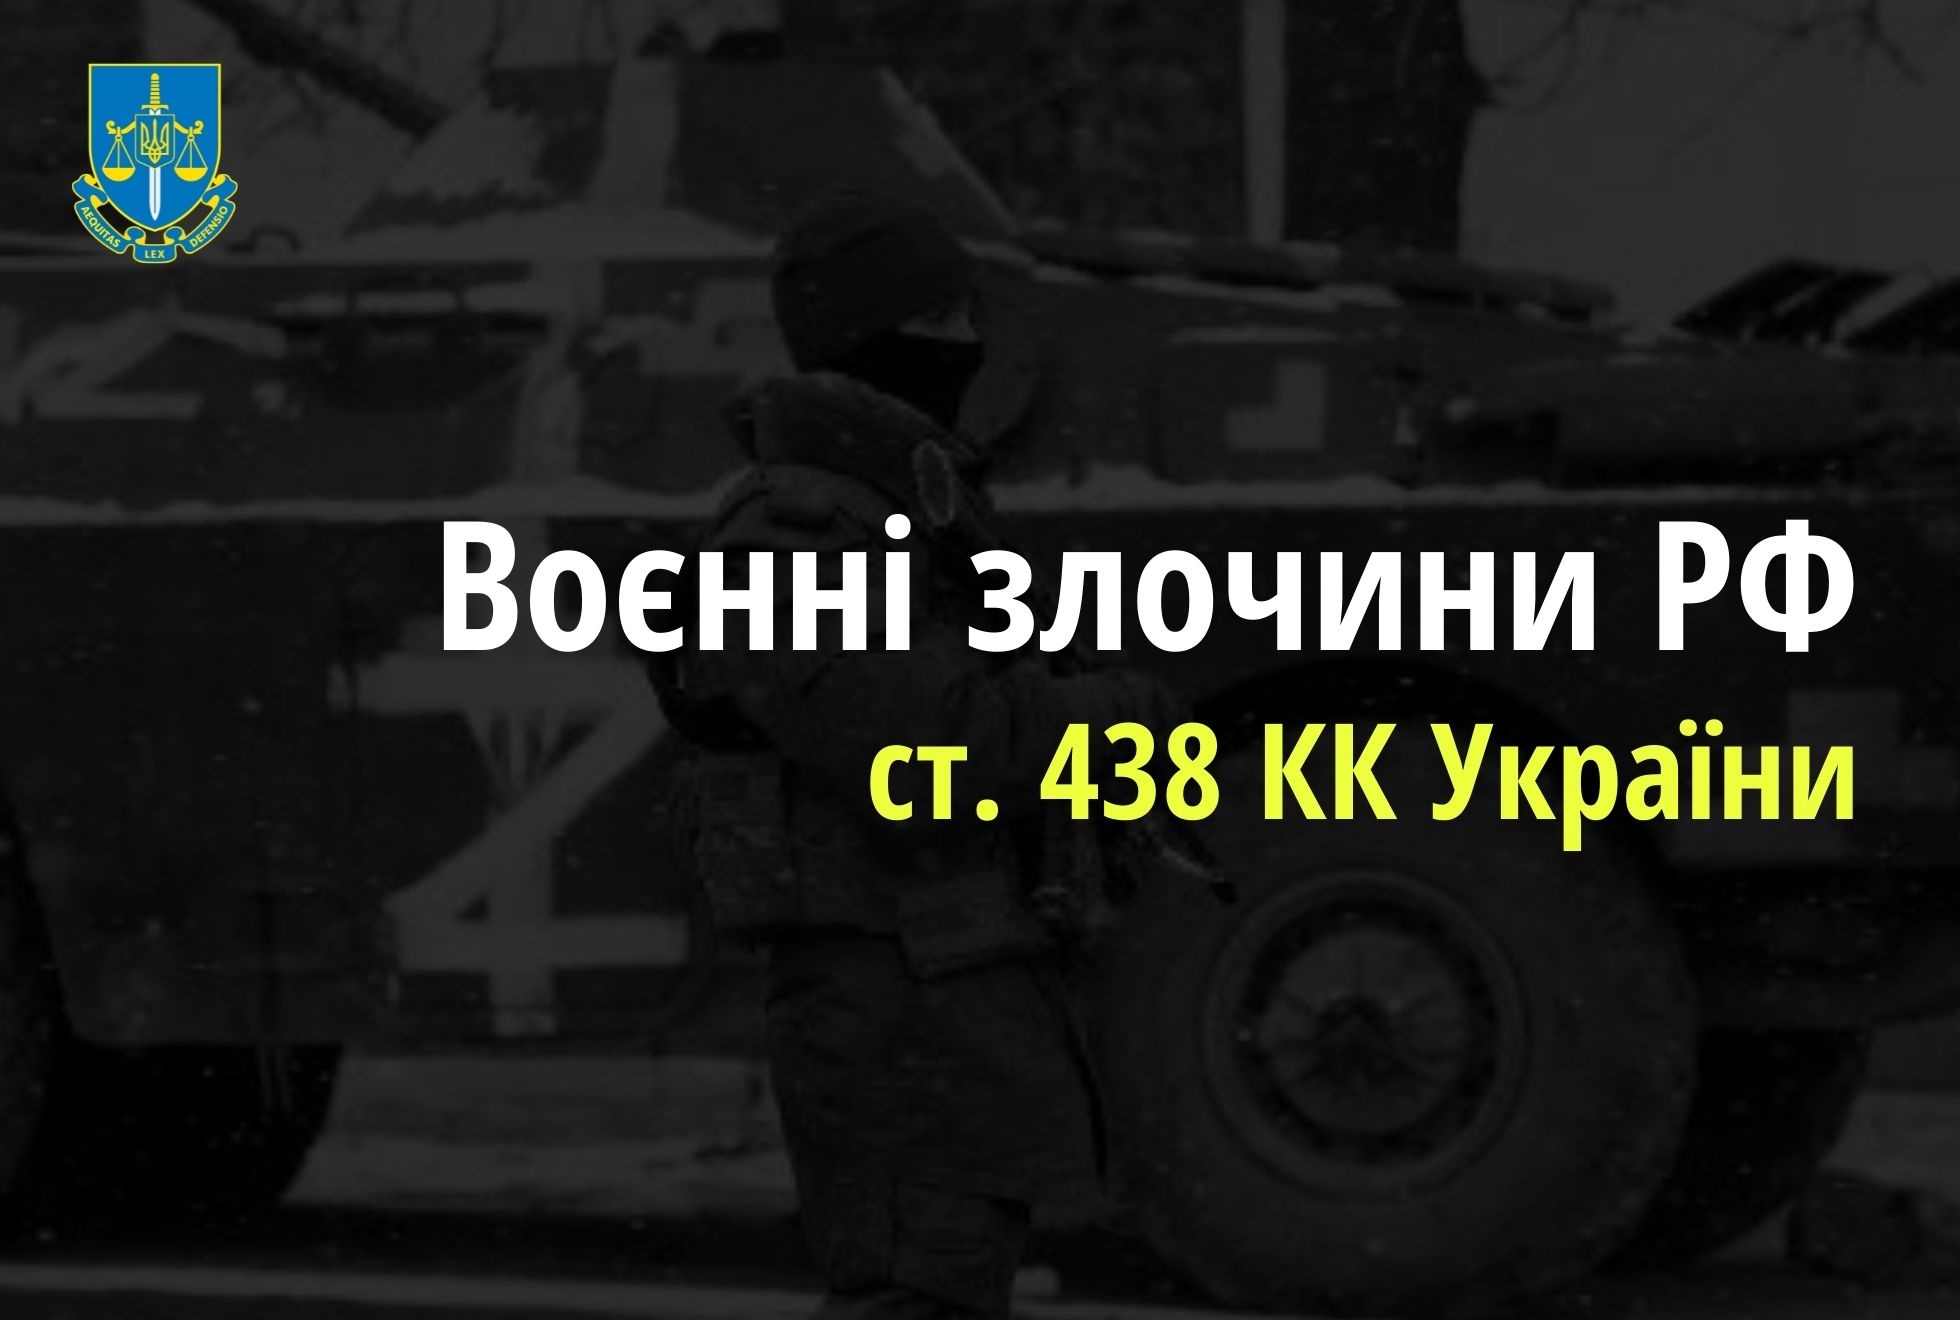 П’ятеро поранених мирних жителів внаслідок масових артобстрілів Луганщини -  розпочато розслідування